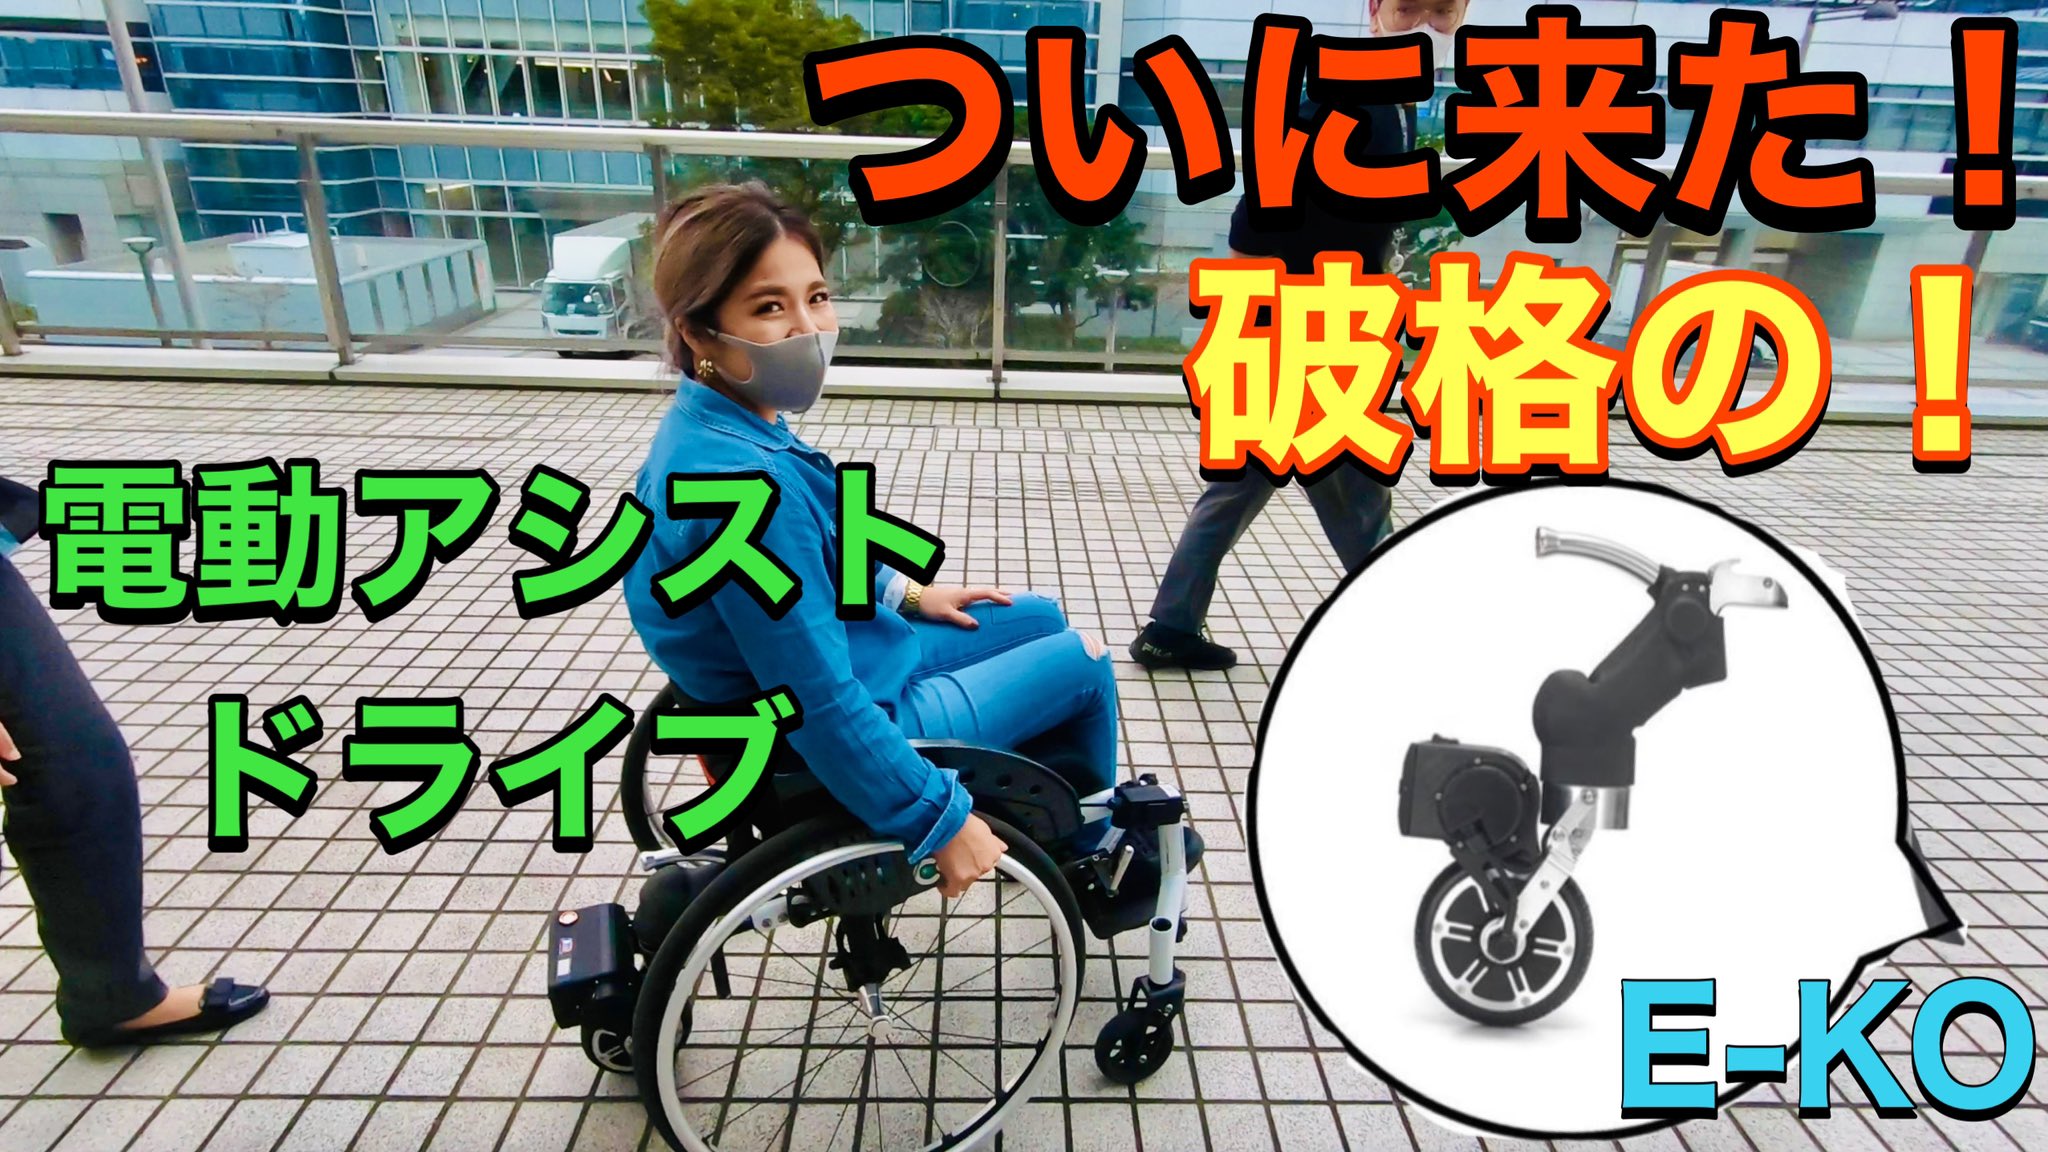 渋谷真子 Youtube更新 電動アシストドライブ やっぱりあると楽ちん 折り畳みの車椅子にも装着できる まずは動画チェックしてみてね 車椅子 見逃し厳禁 先着50名 電動アシストドライブe Koがついに登場 T Co Efeg5p1kzl